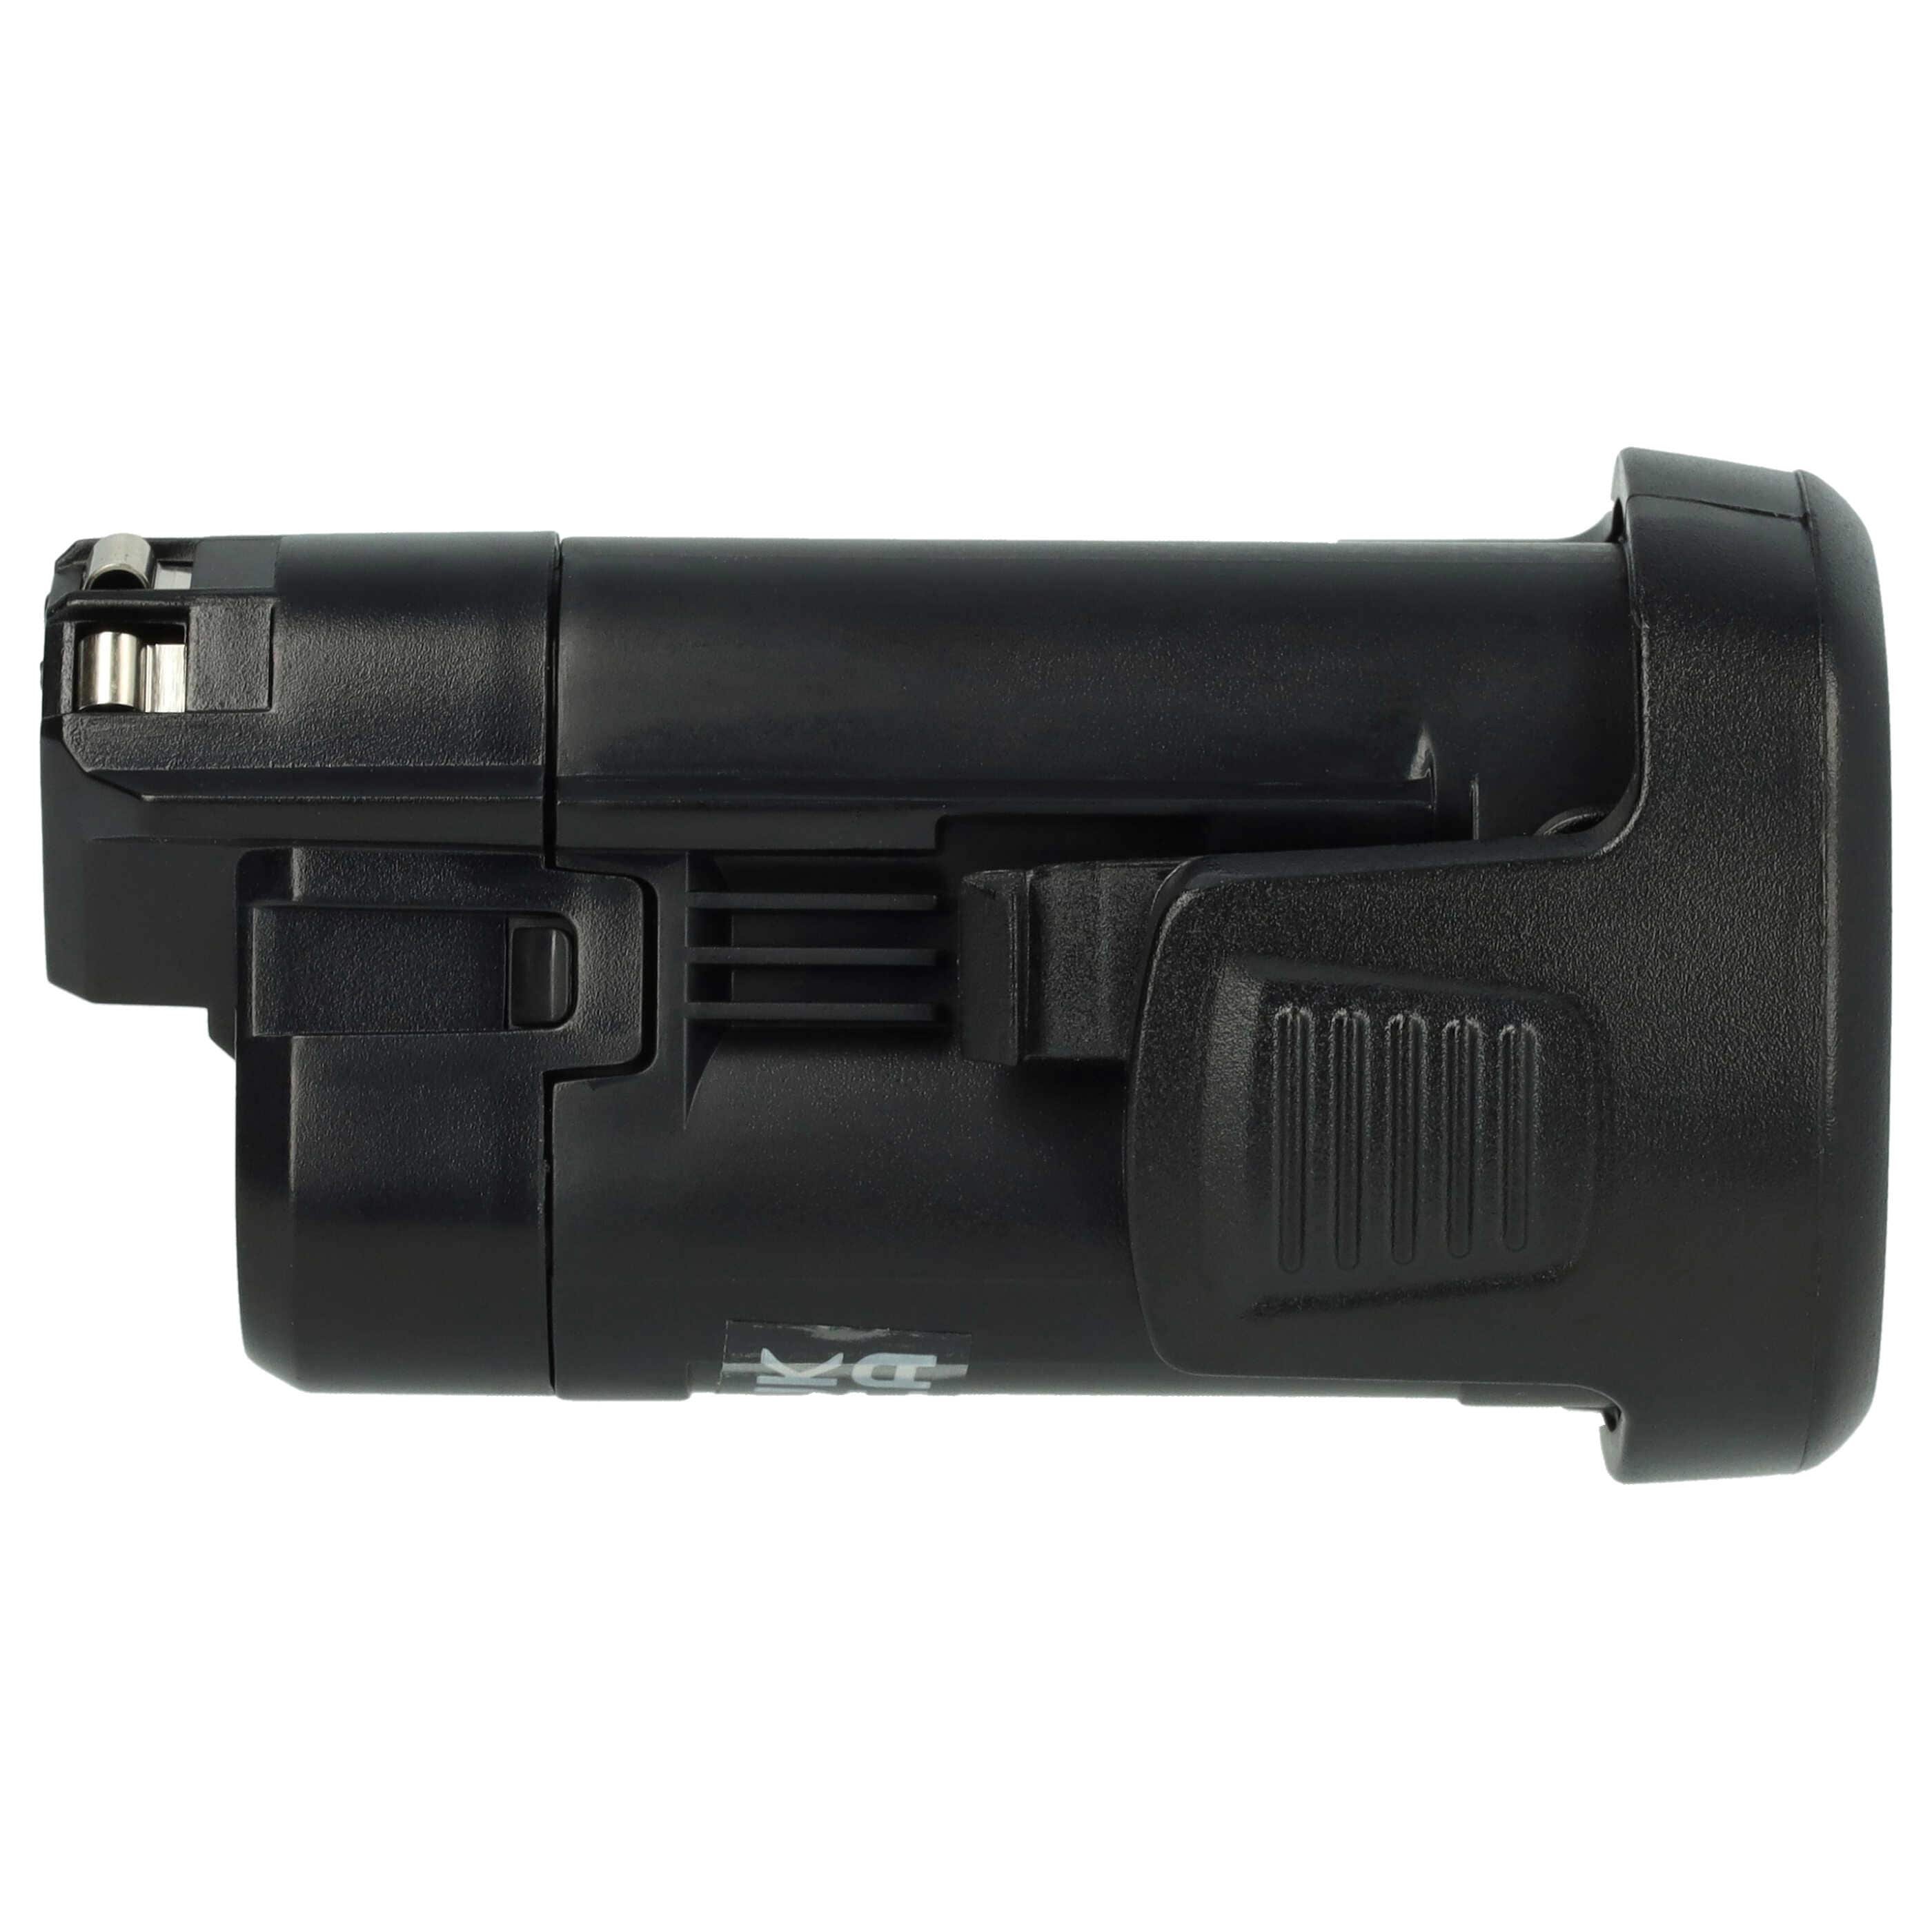 Akku 10,8V passend für Bosch PSR 10.8 Li-2, Dremel 875, 8200, 8220, 8300 - 2000mAh, Li-Ion